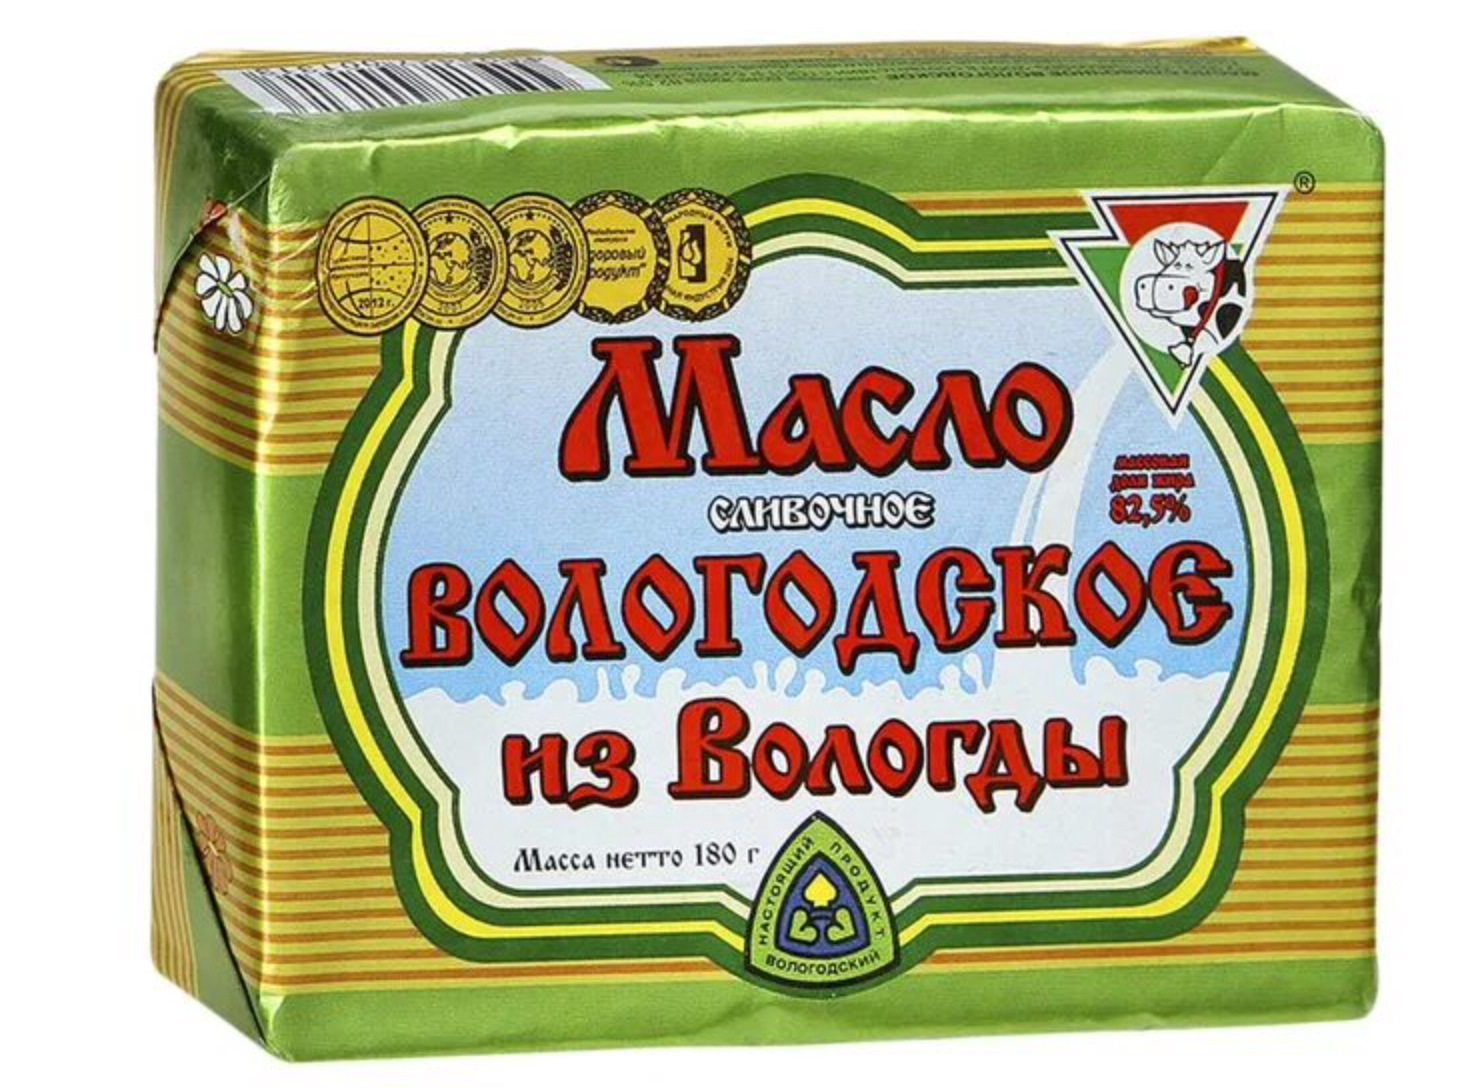 Масло сливочное Вологодское из Вологды. 82,5%